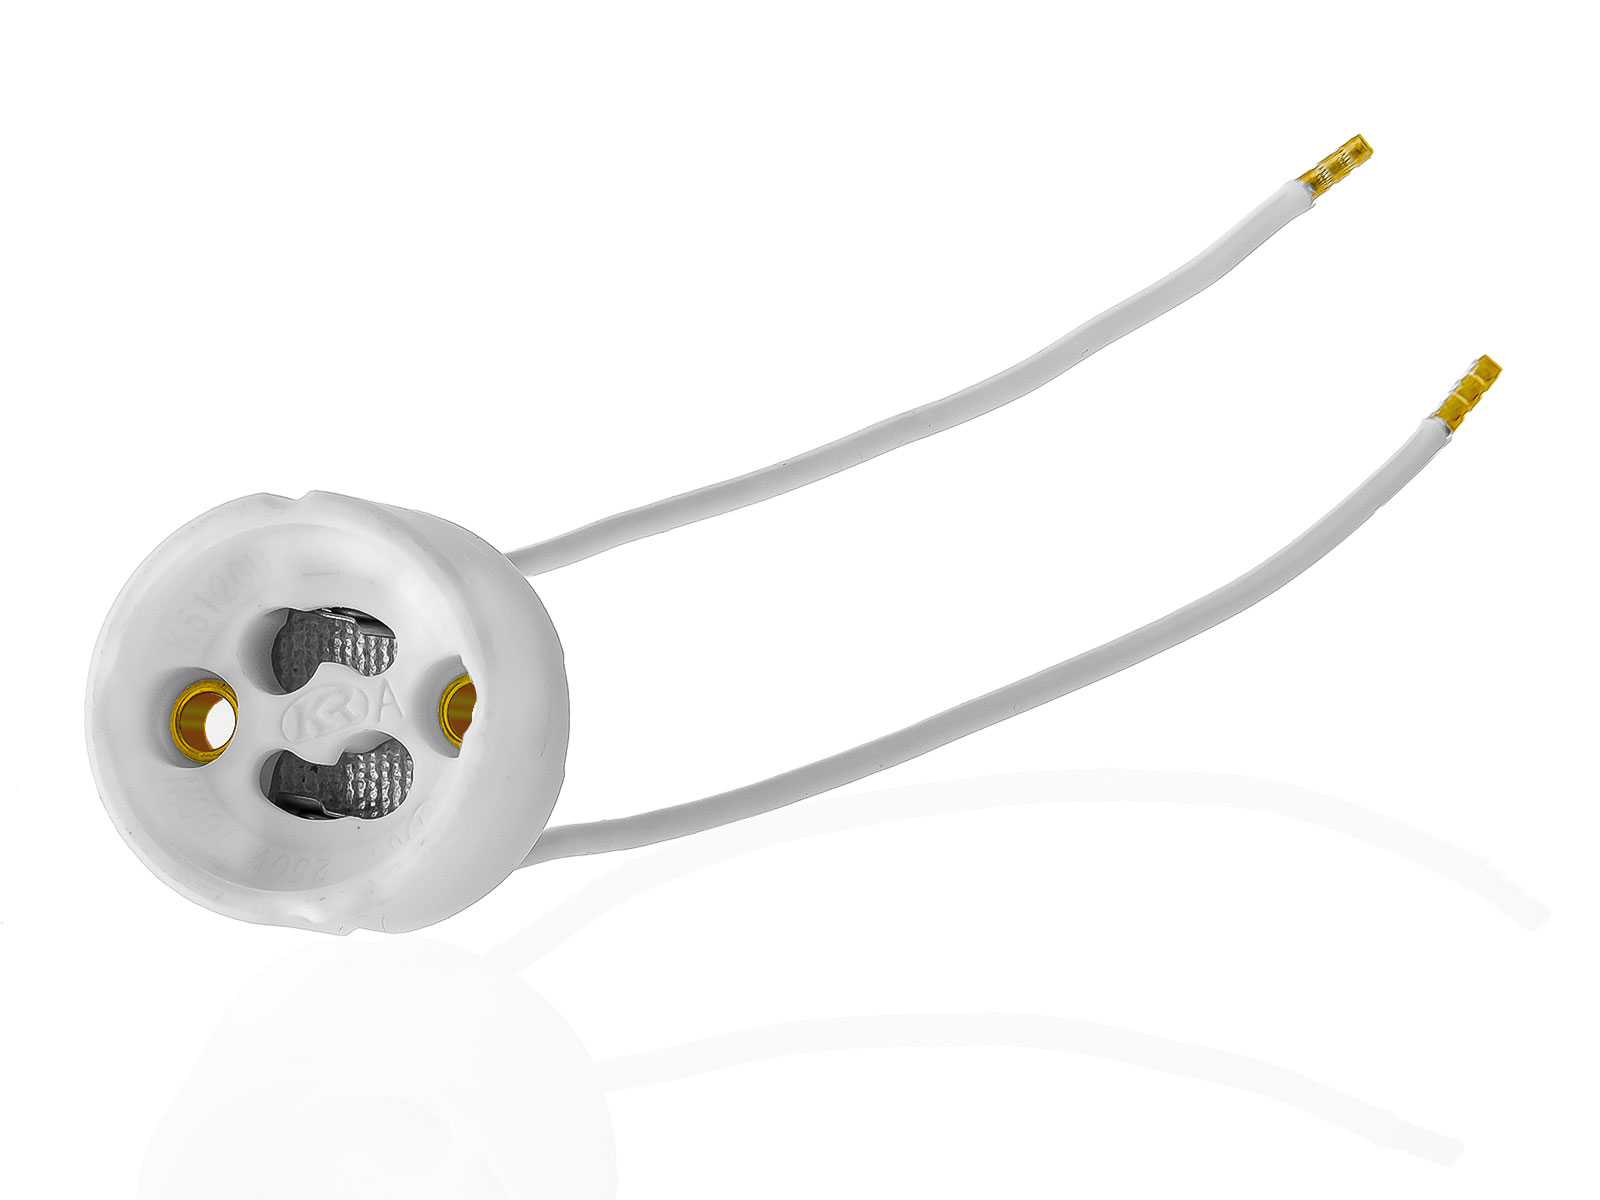 50x GU10 Lampenfassungen Sockel aus Keramik mit Qualitäts Silikonkabel für LED und Halogenleuchtmittel XmediaSat GU10.S50 weiß